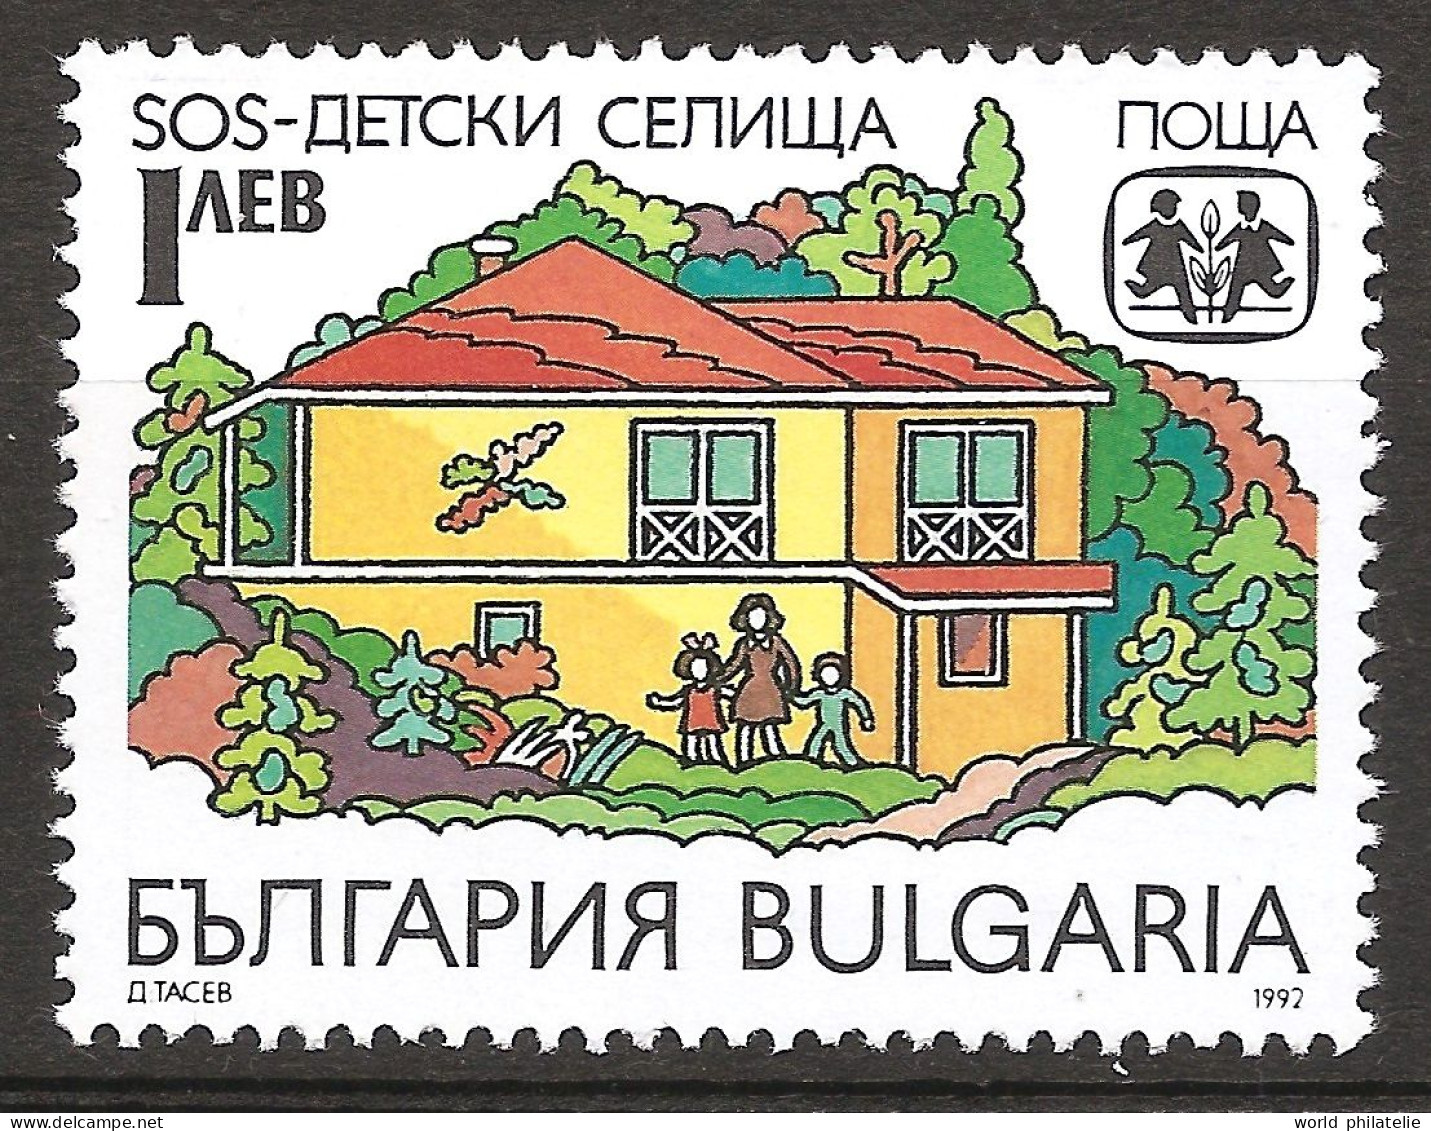 Bulgarie Bulgaria 1992 N° 3449 ** Village D'enfants SOS, Dessin, Famille, Maison, Abri, Jeu, Nœud, Orphelin, Violence - Ungebraucht